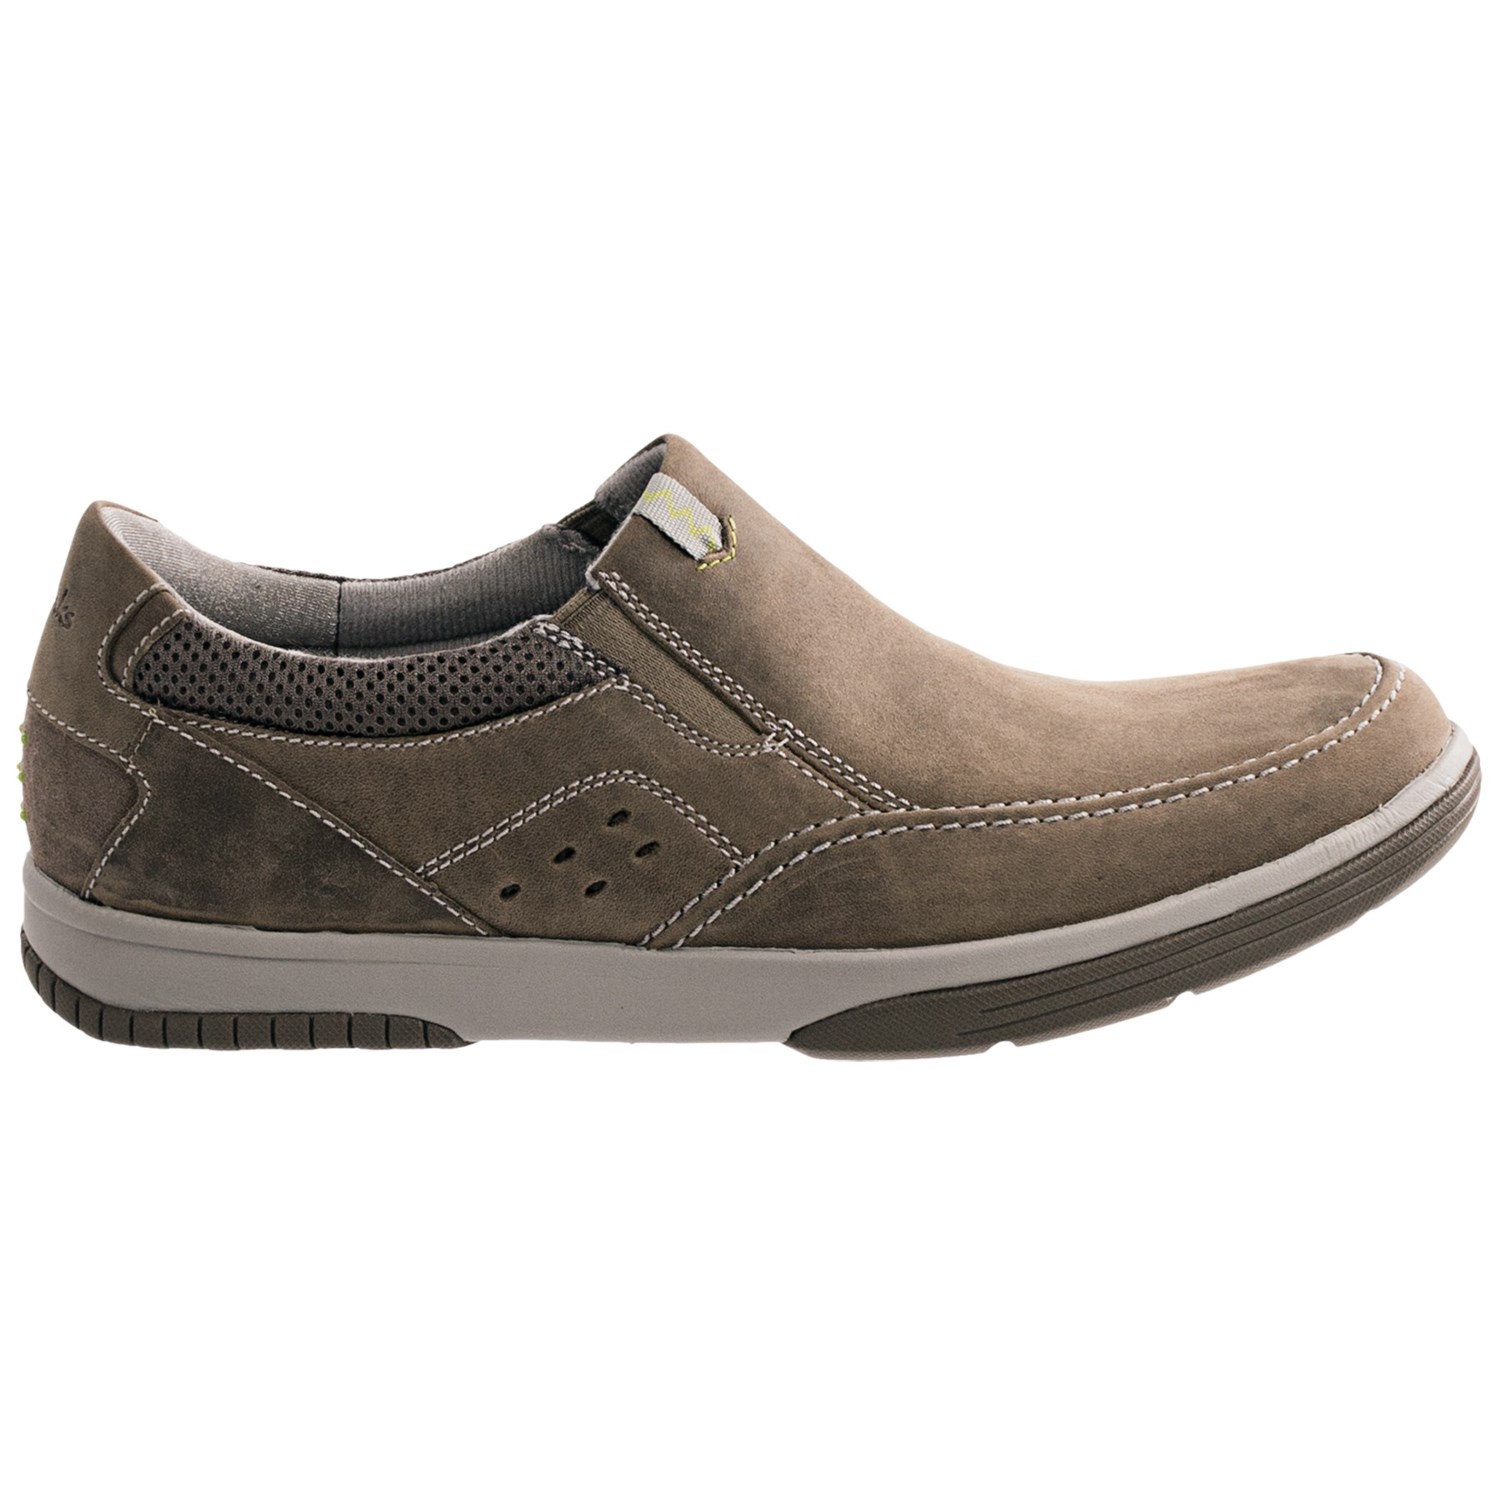 Clarks Wavecamp Easy Shoes (For Men) 8657J - Save 48%